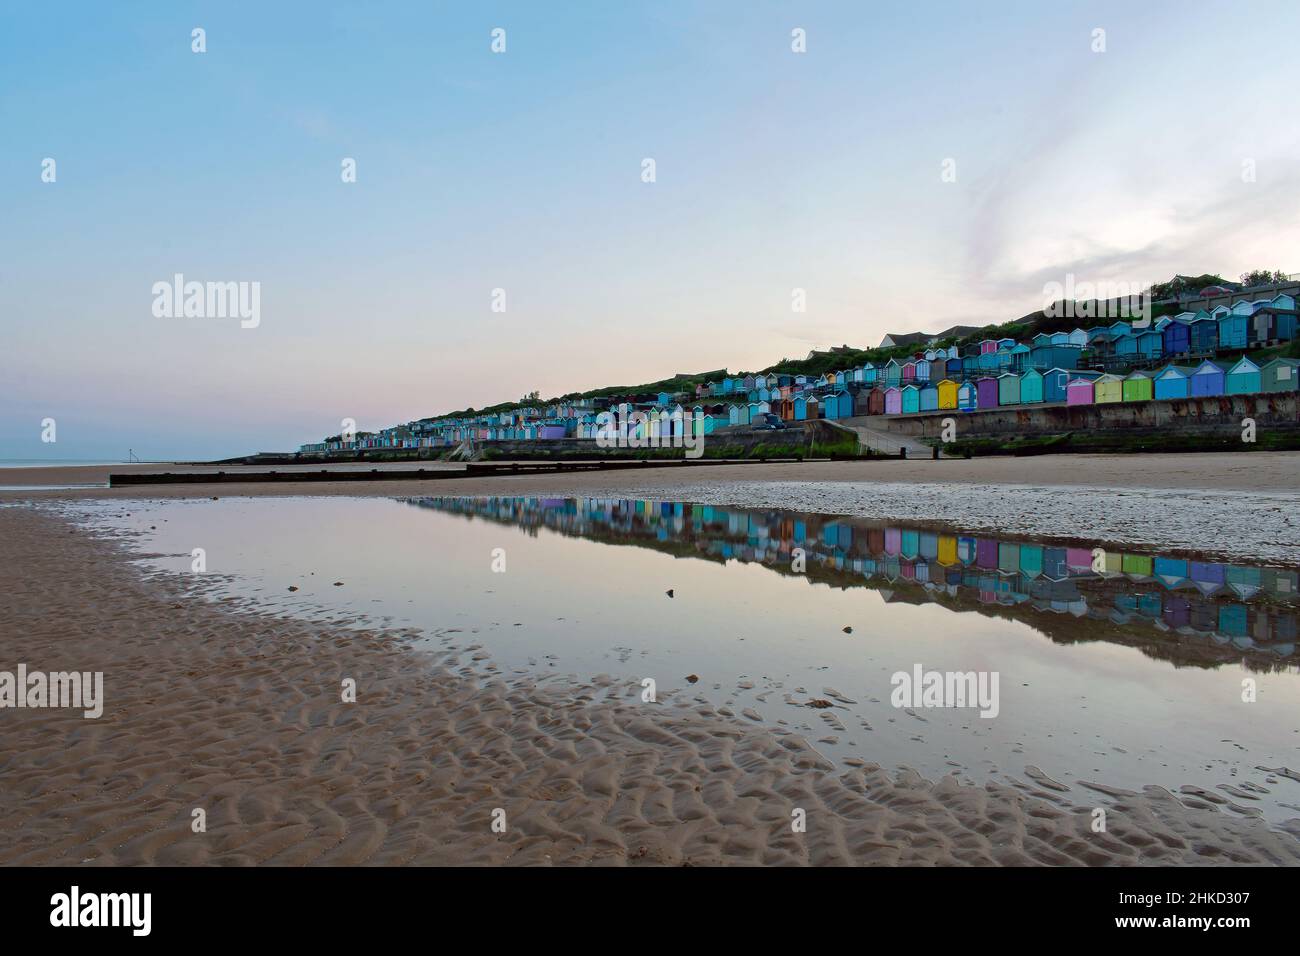 Des cabanes de plage colorées bordent la promenade de Walton-on-the-Naze, sur la côte nord de l'Essex, au Royaume-Uni.Réflexions créées dans les bassins laissés à marée basse. Banque D'Images